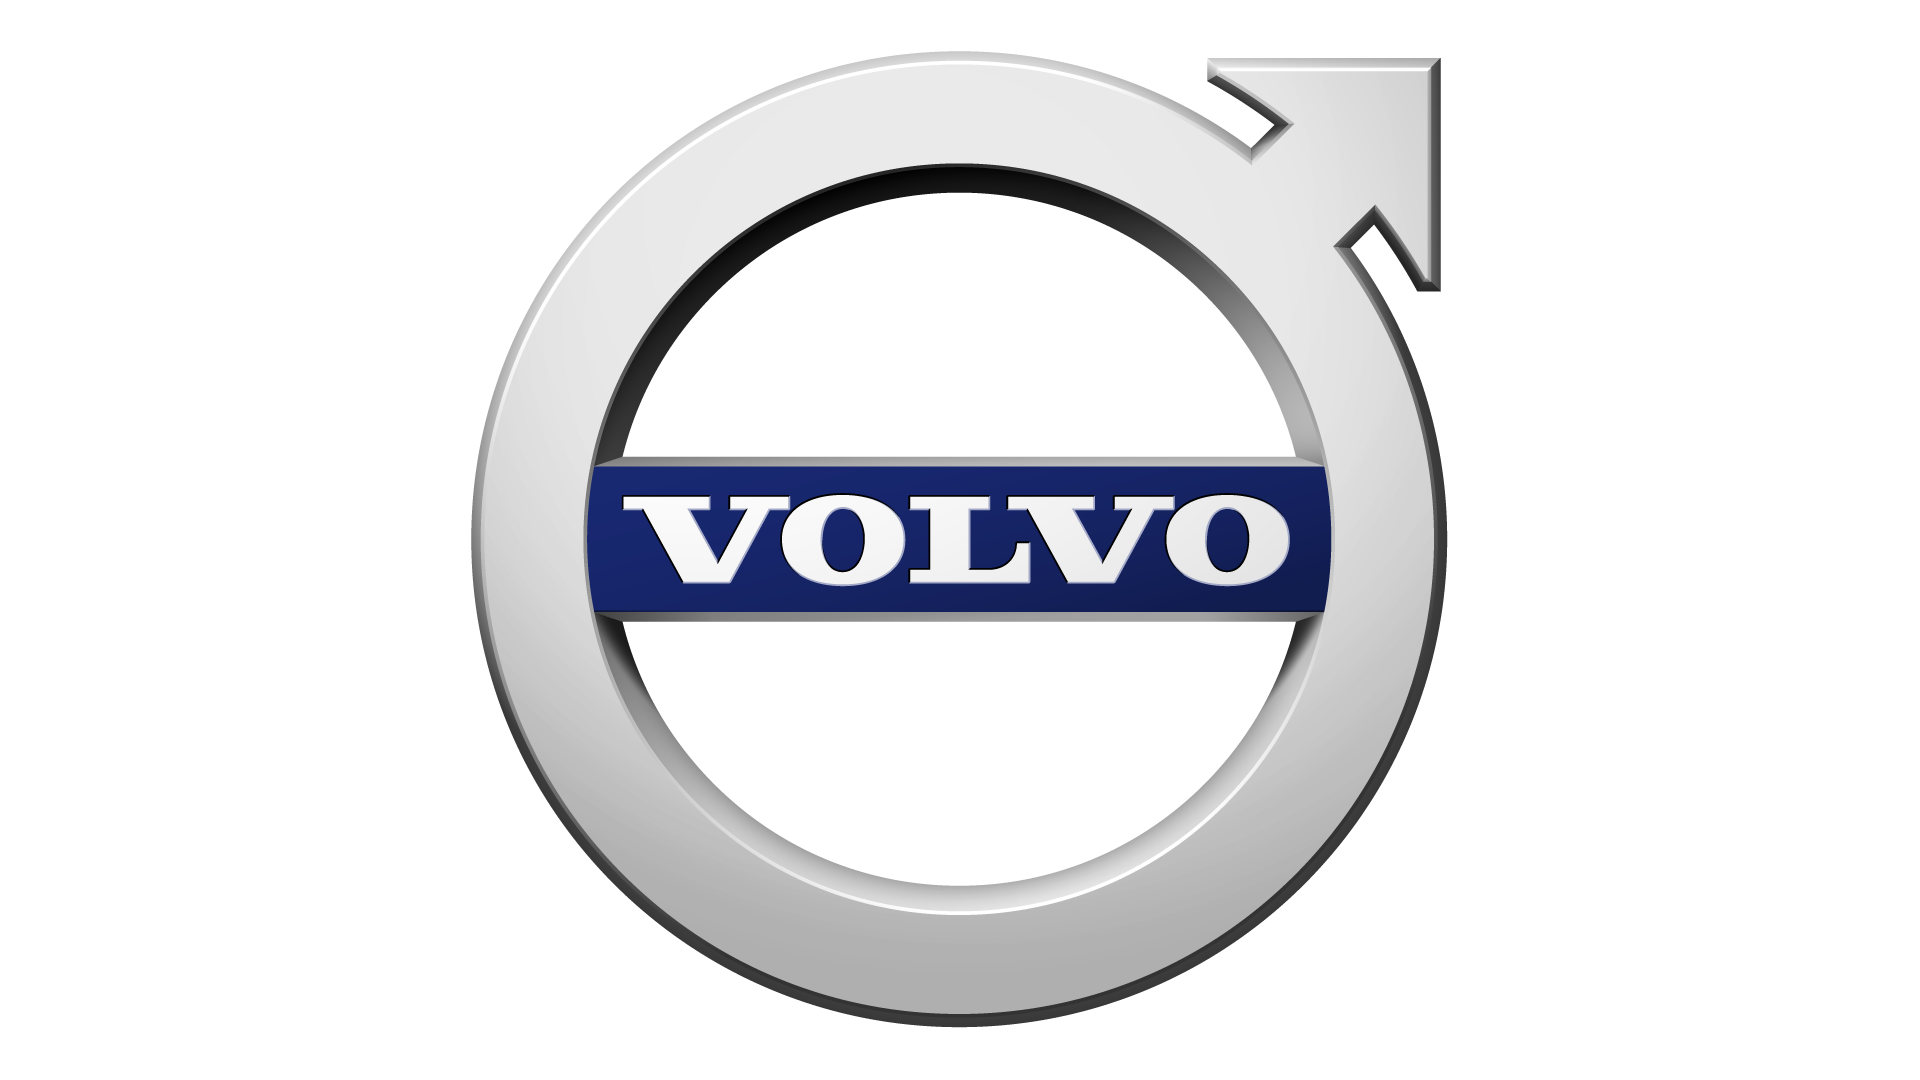 Logo Volvo Png - KibrisPDR